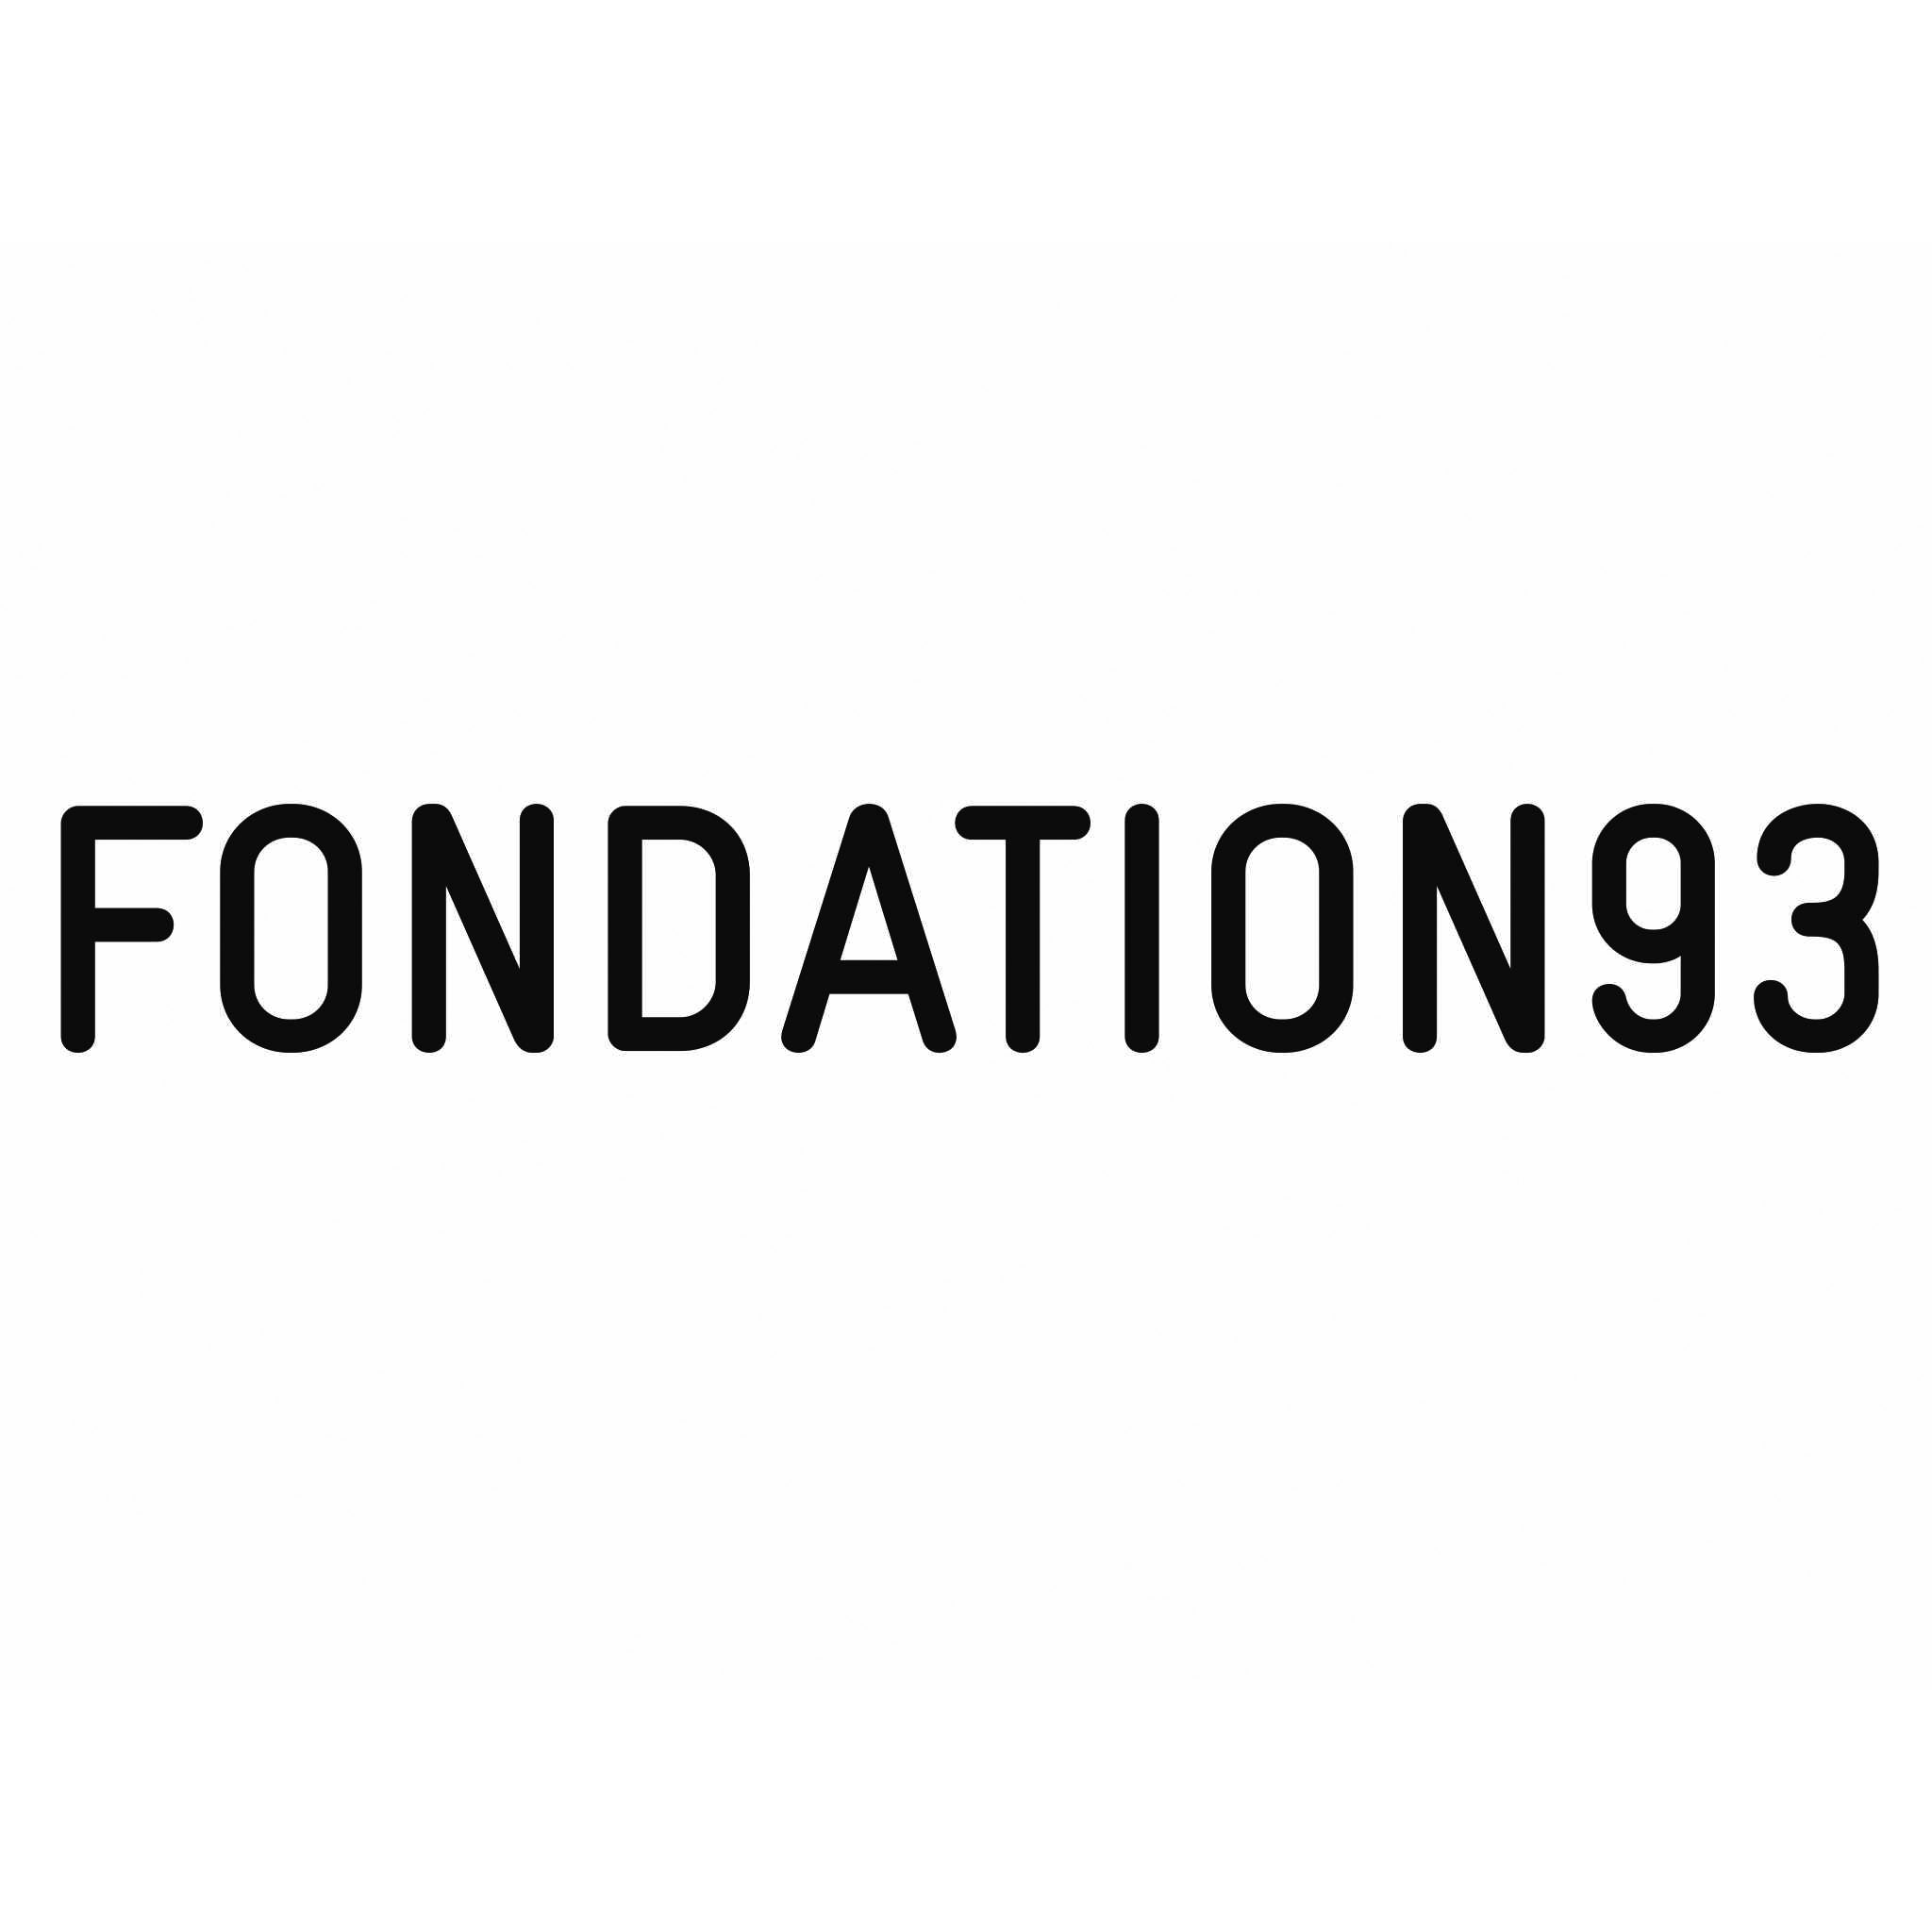 FONDATION 93